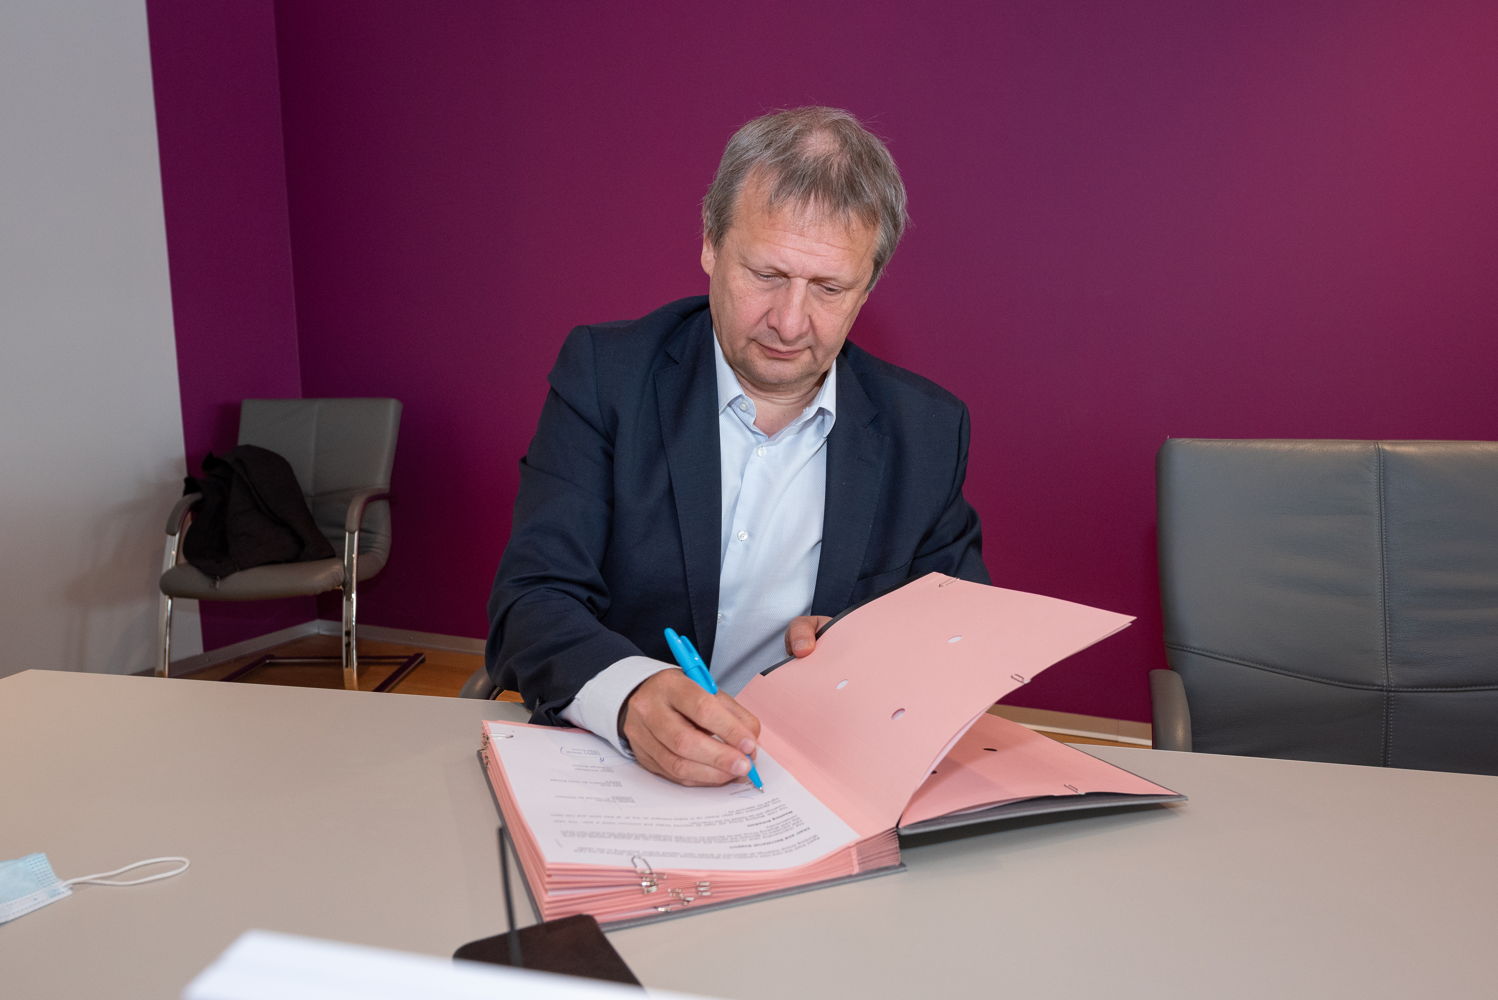 Johan Decuyper, CEO skeyes